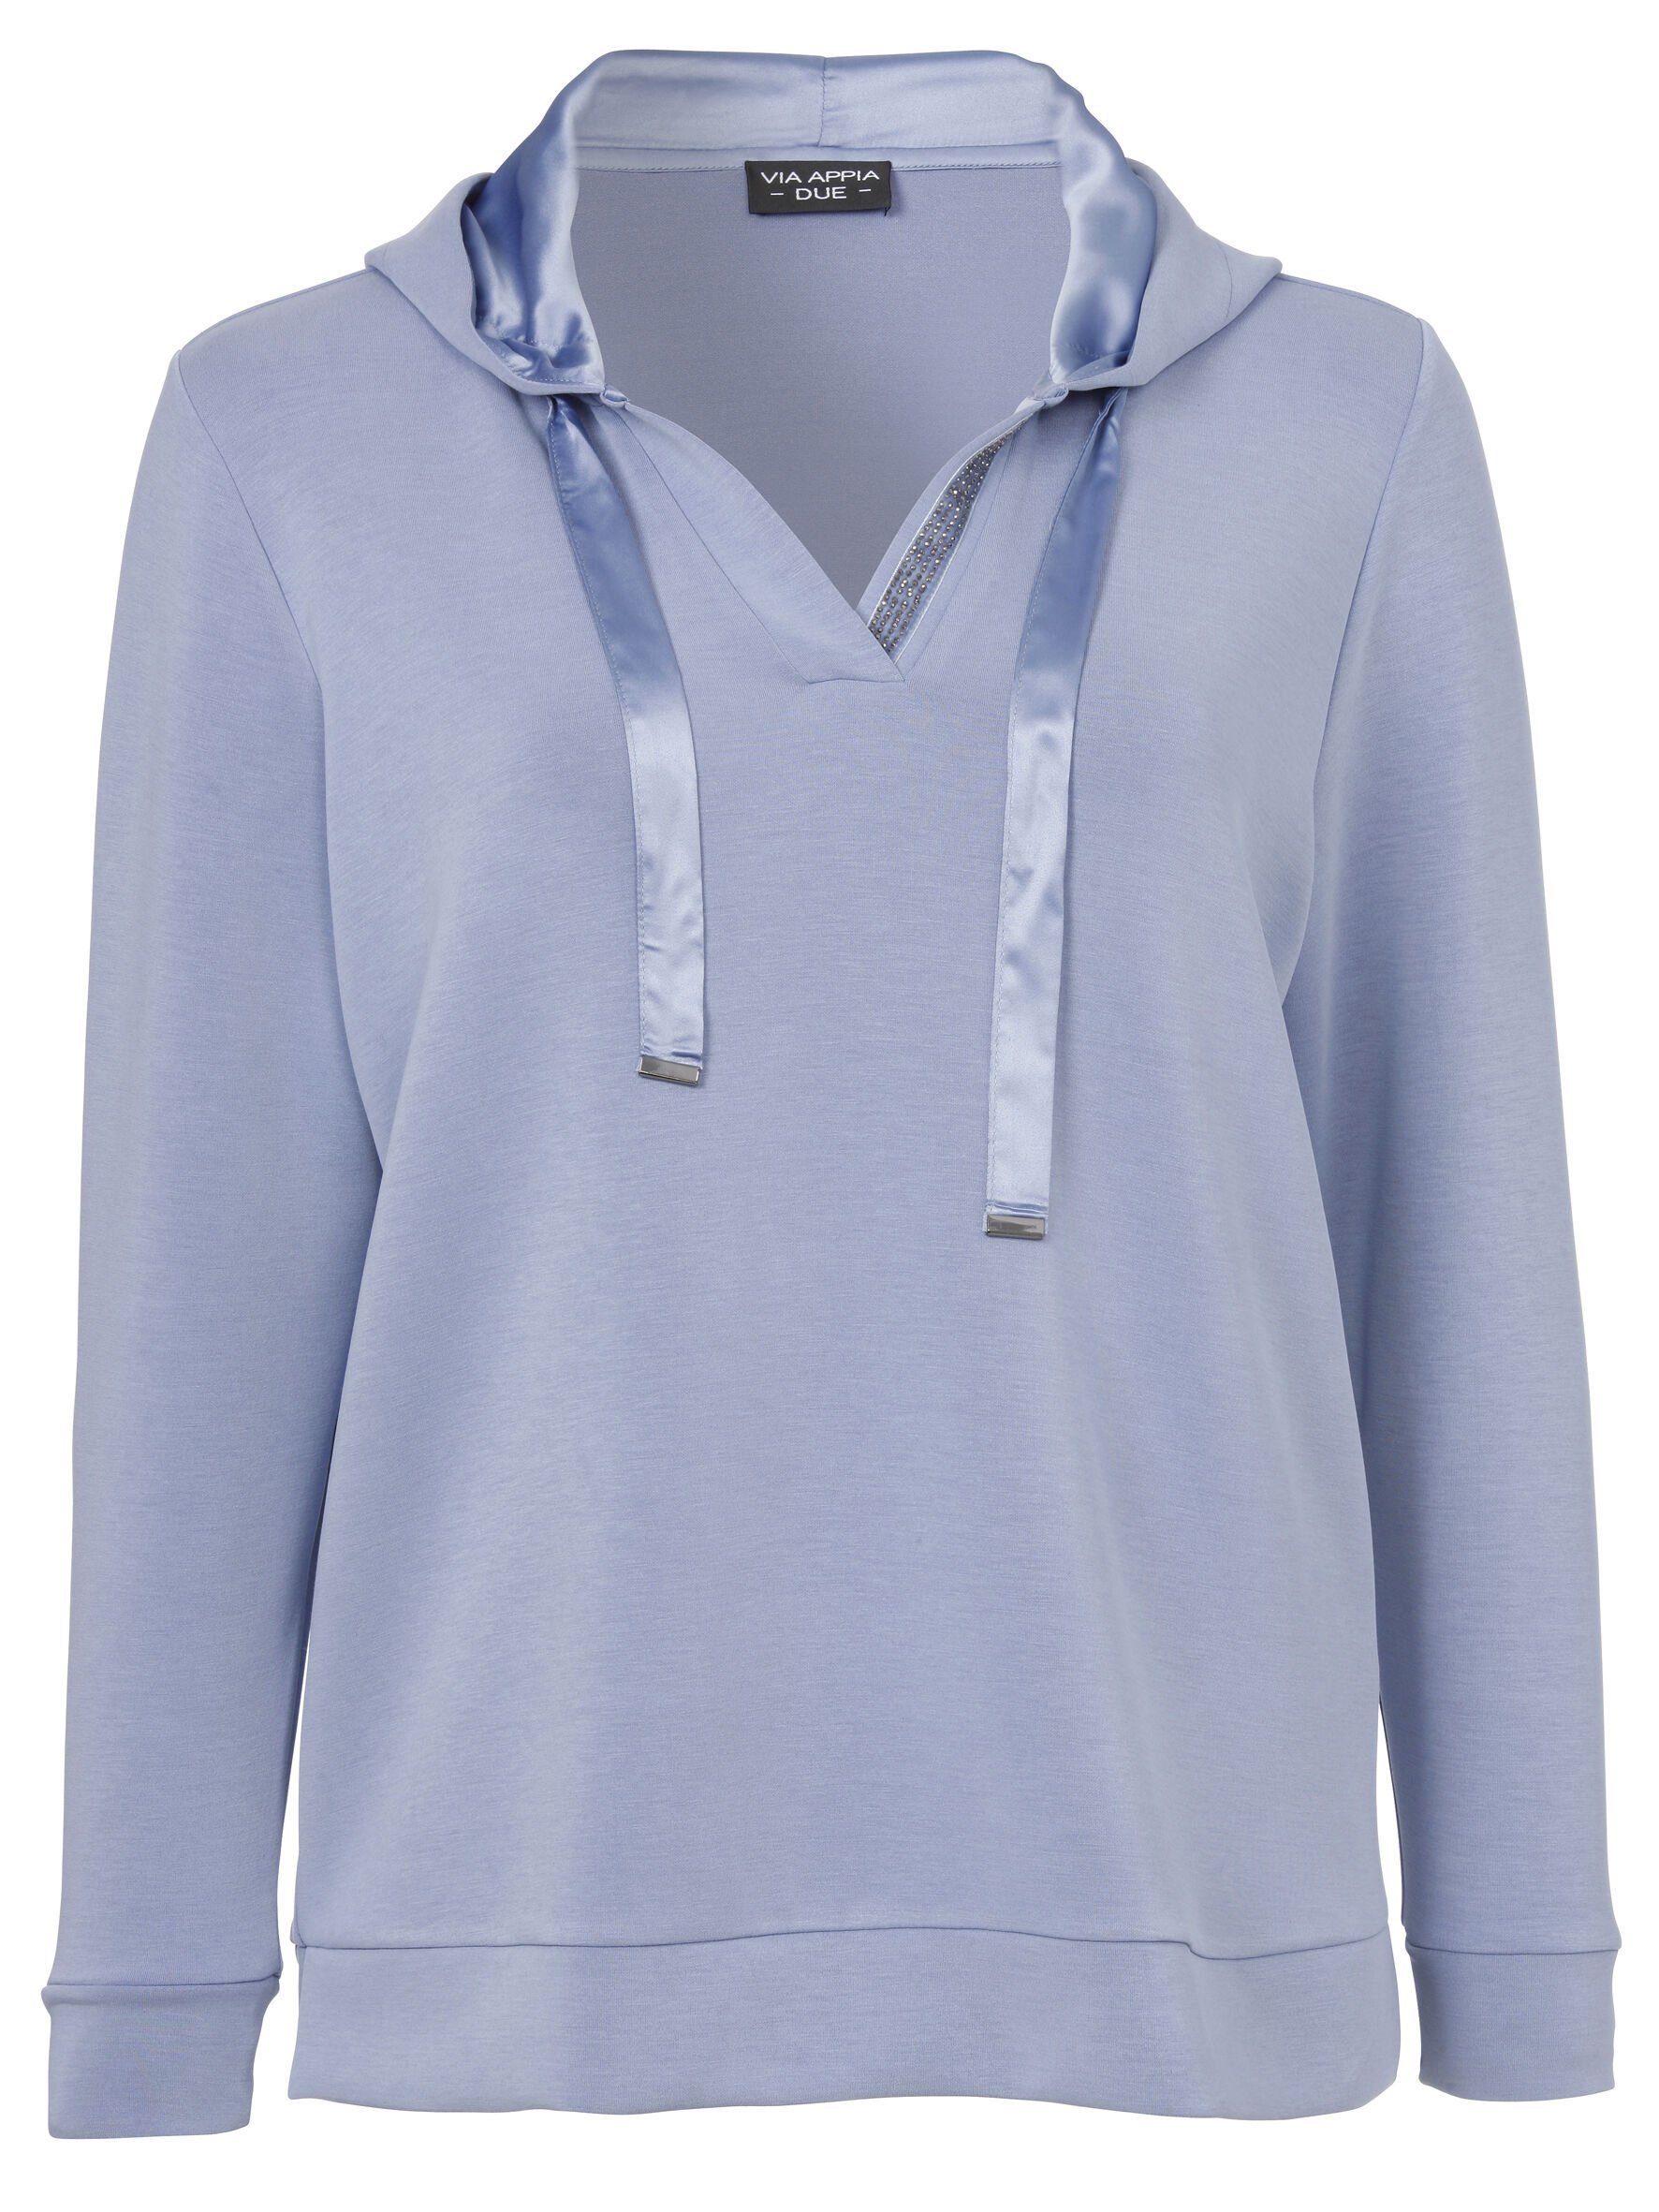 Sweatshirt Sportives DUE Stil mit unifarbenem VIA in rauchblau hochwertigen APPIA Viskosemischung Sweatshirt